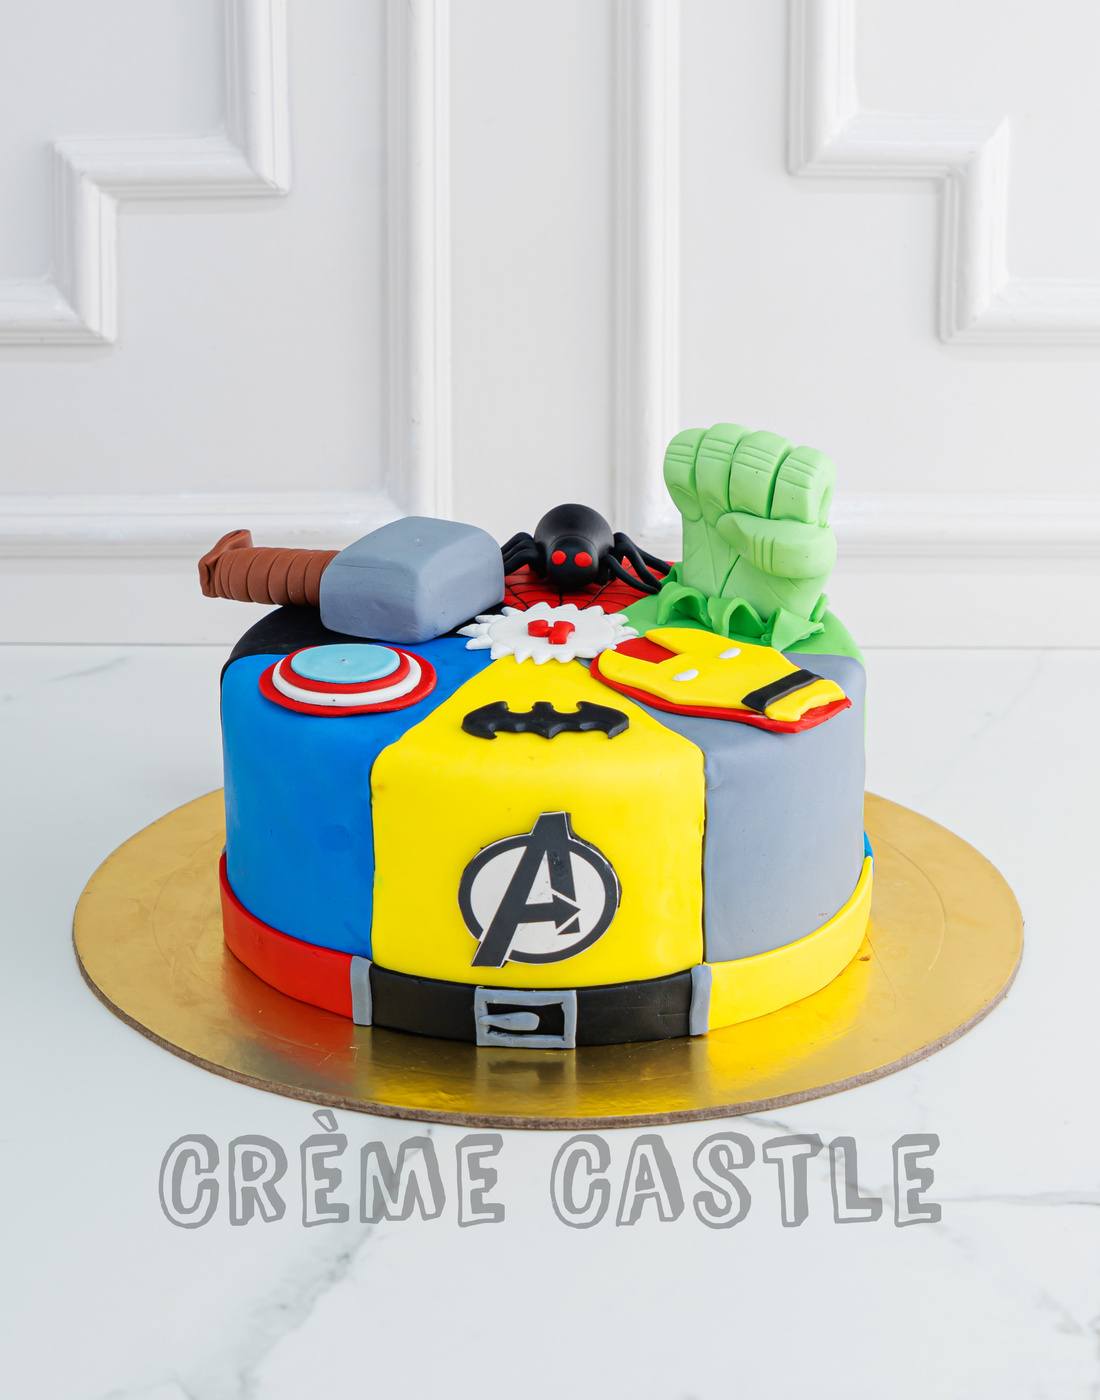 Avengers Cake 59